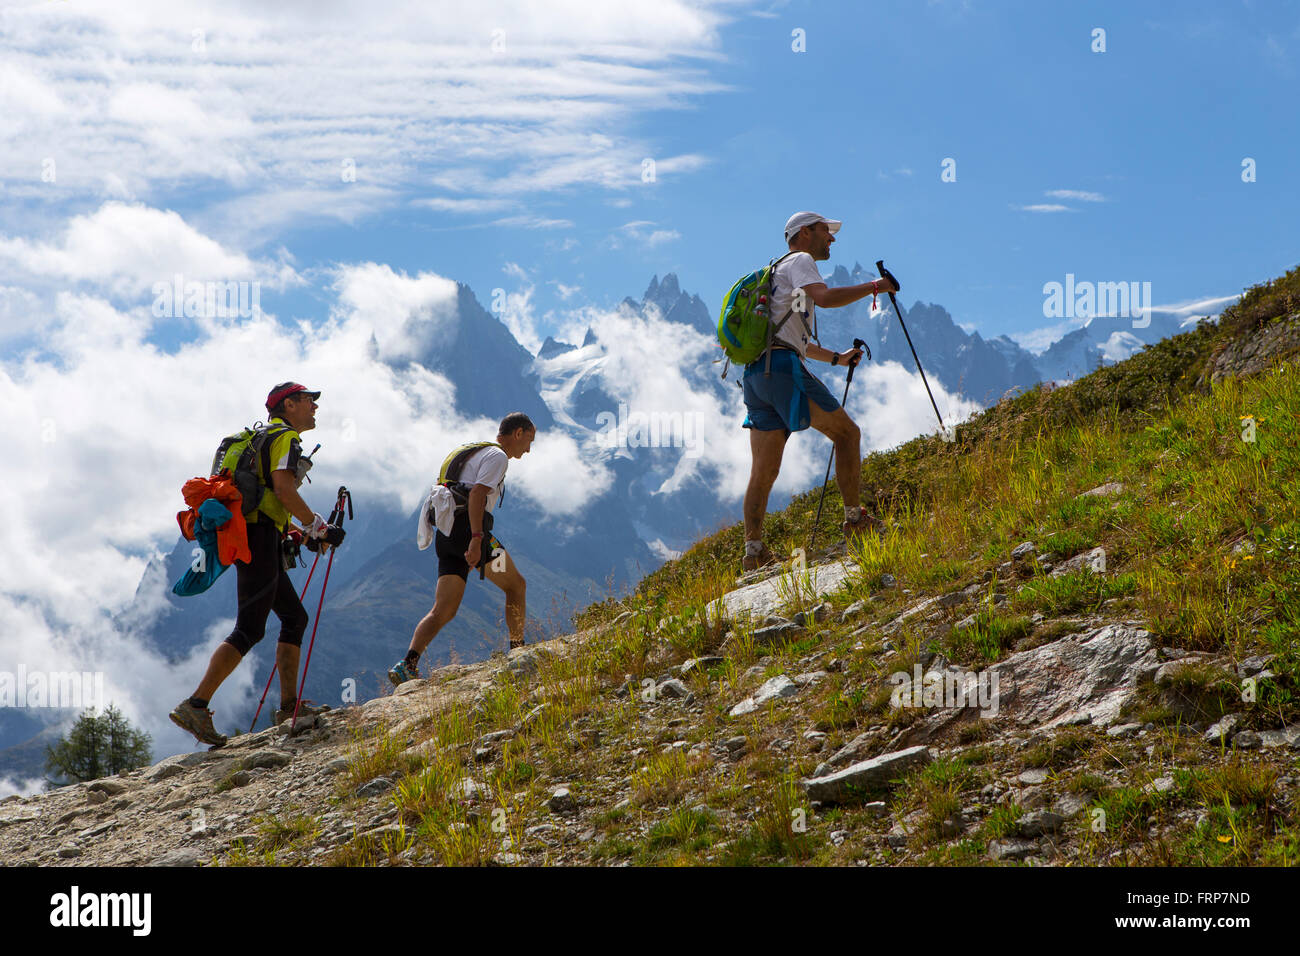 Trois participants de l'UTMB sont en cours d'exécution dans les collines de Chamonix. Les célèbres sommets du massif du Mont Blanc sont à l'arrière-plan. Banque D'Images